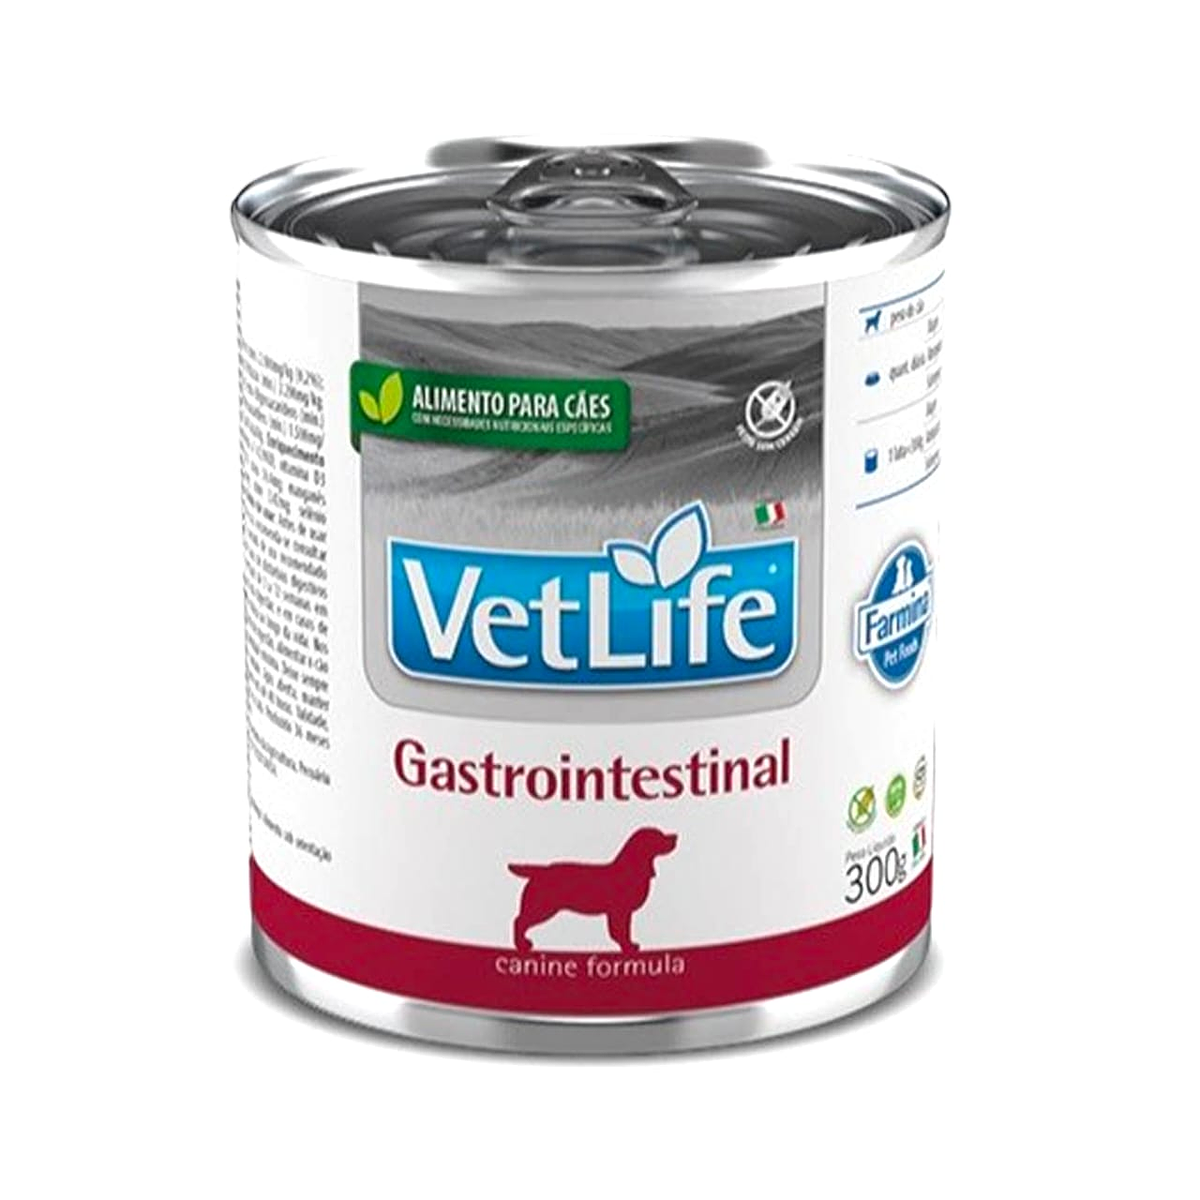 VetLife Gastrointestinal Perro 300gr